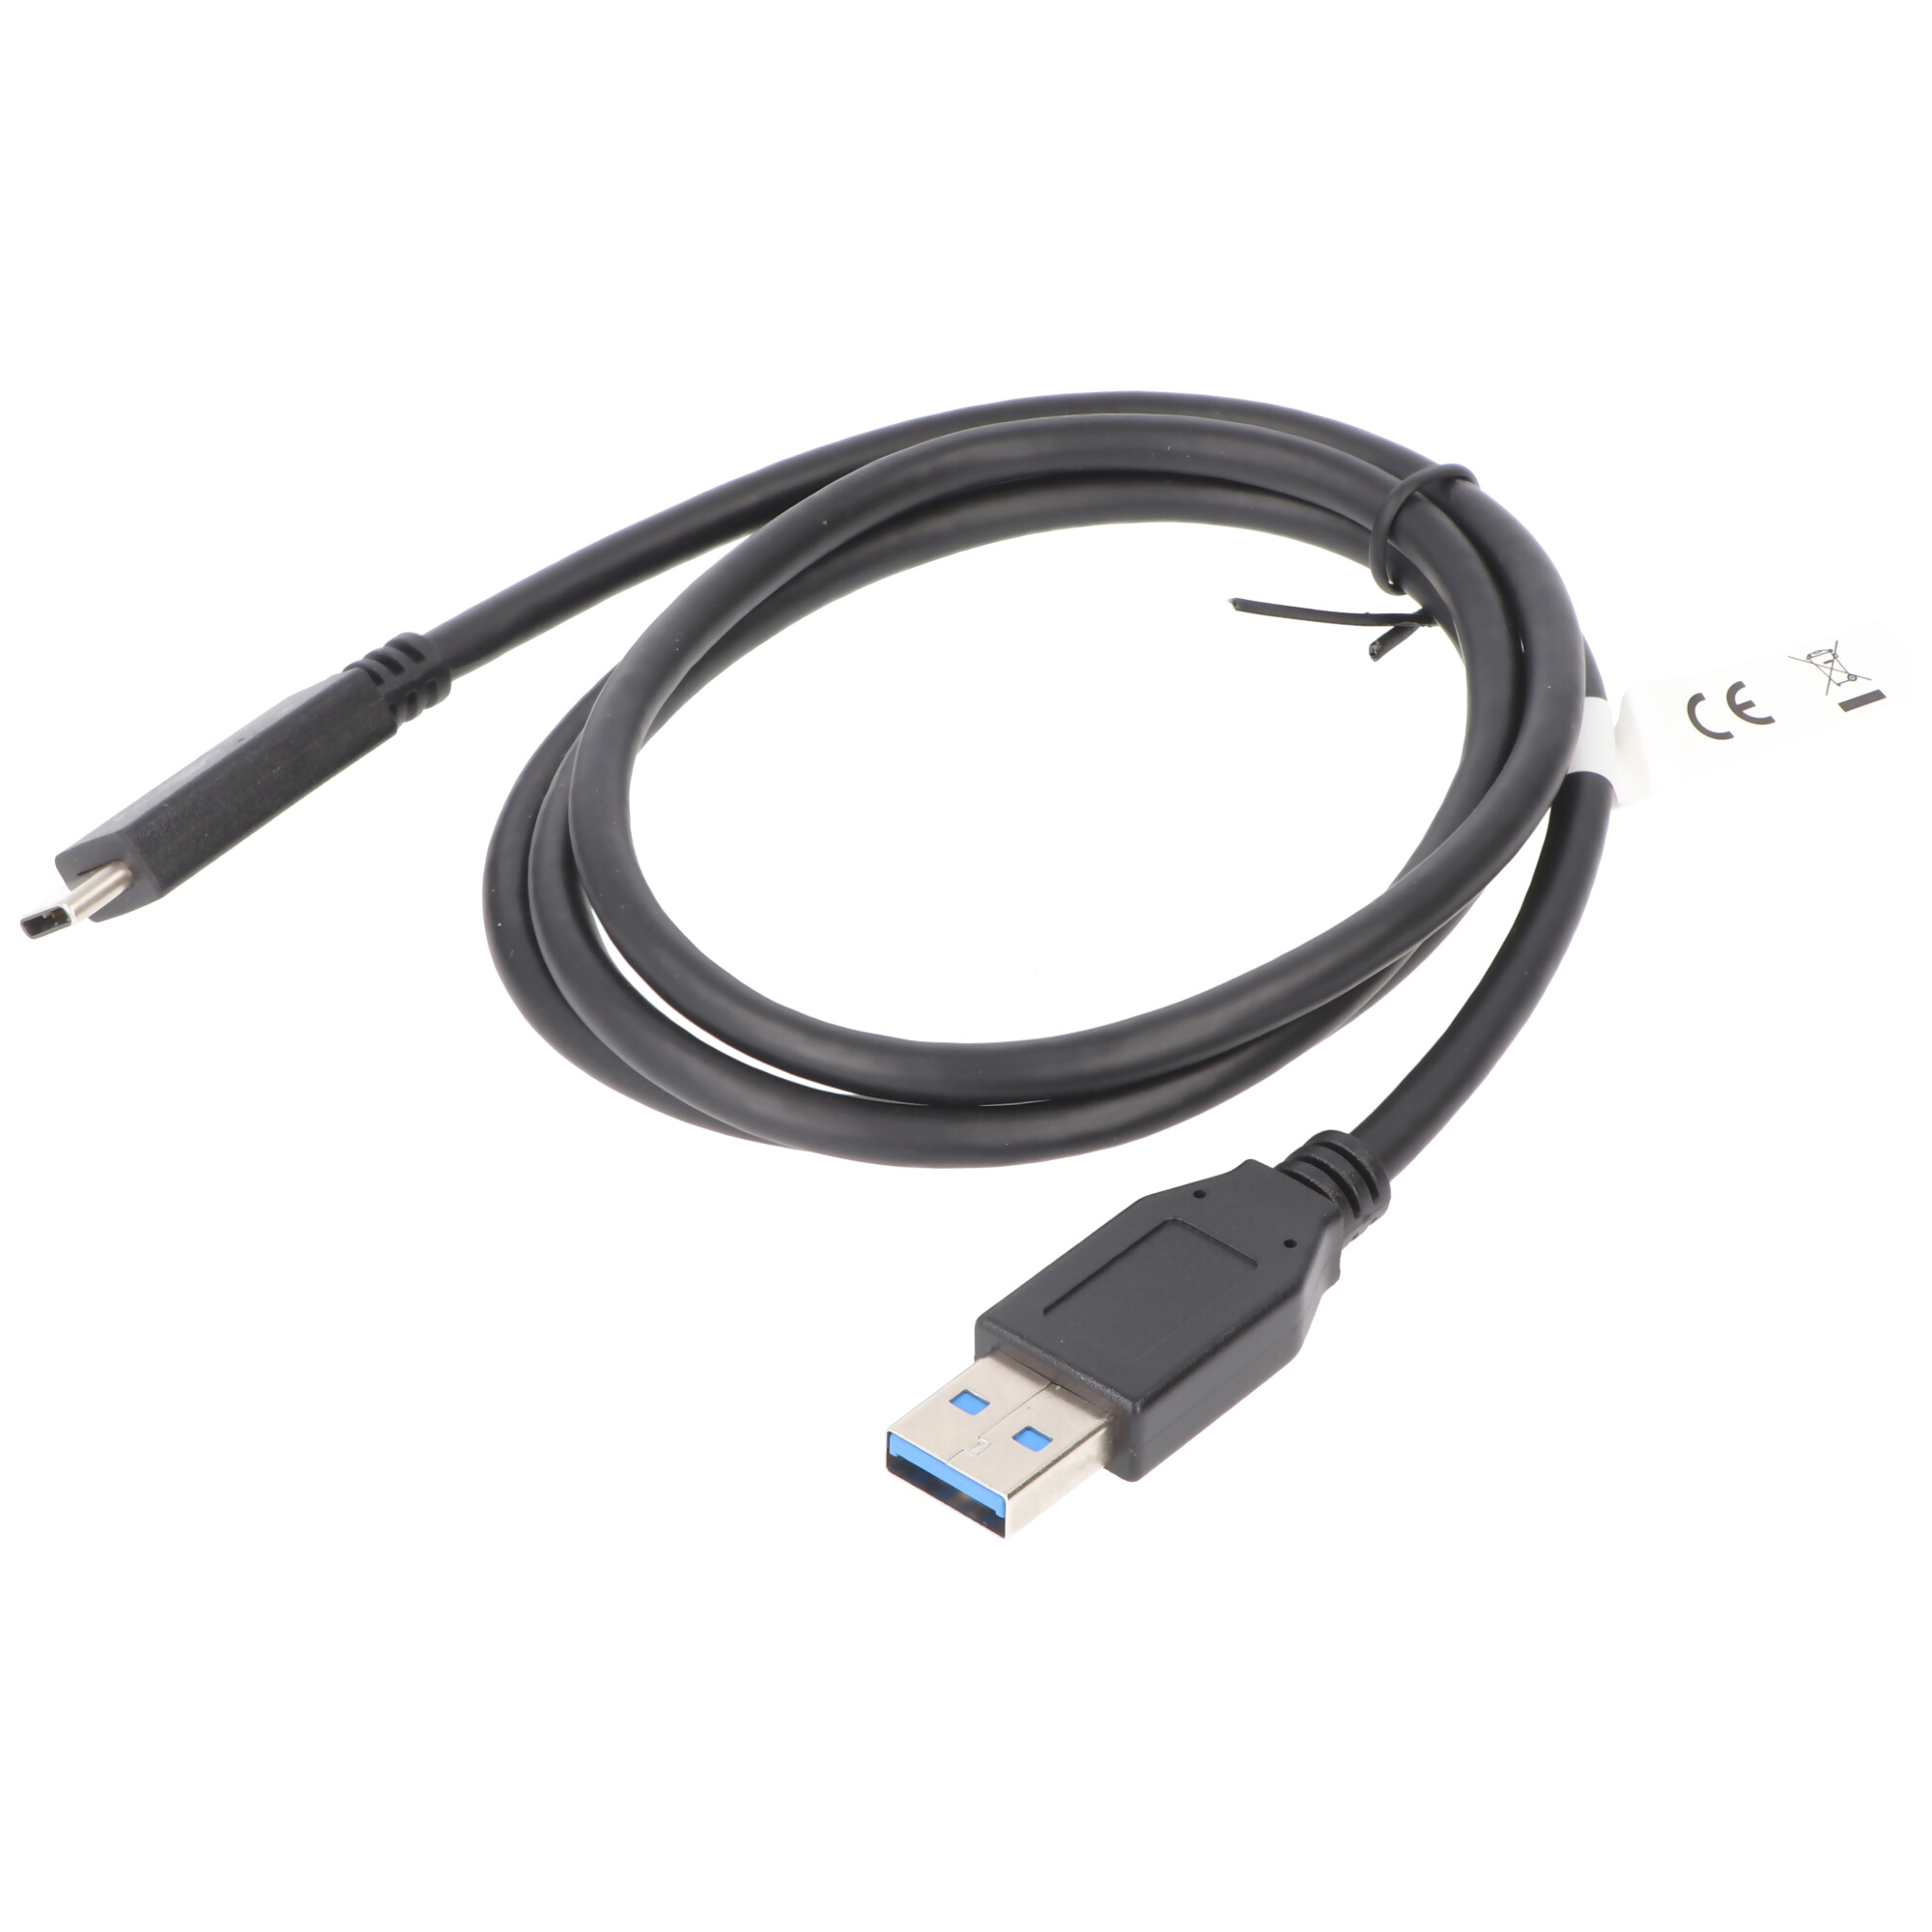 USB-C Lade- und Synchronisationskabel USB 3.1 Generation 2 für alle Geräte mit  USB-C Anschluss, 1 Meter schwarz, 3A, für USB-C, Ladegeräte